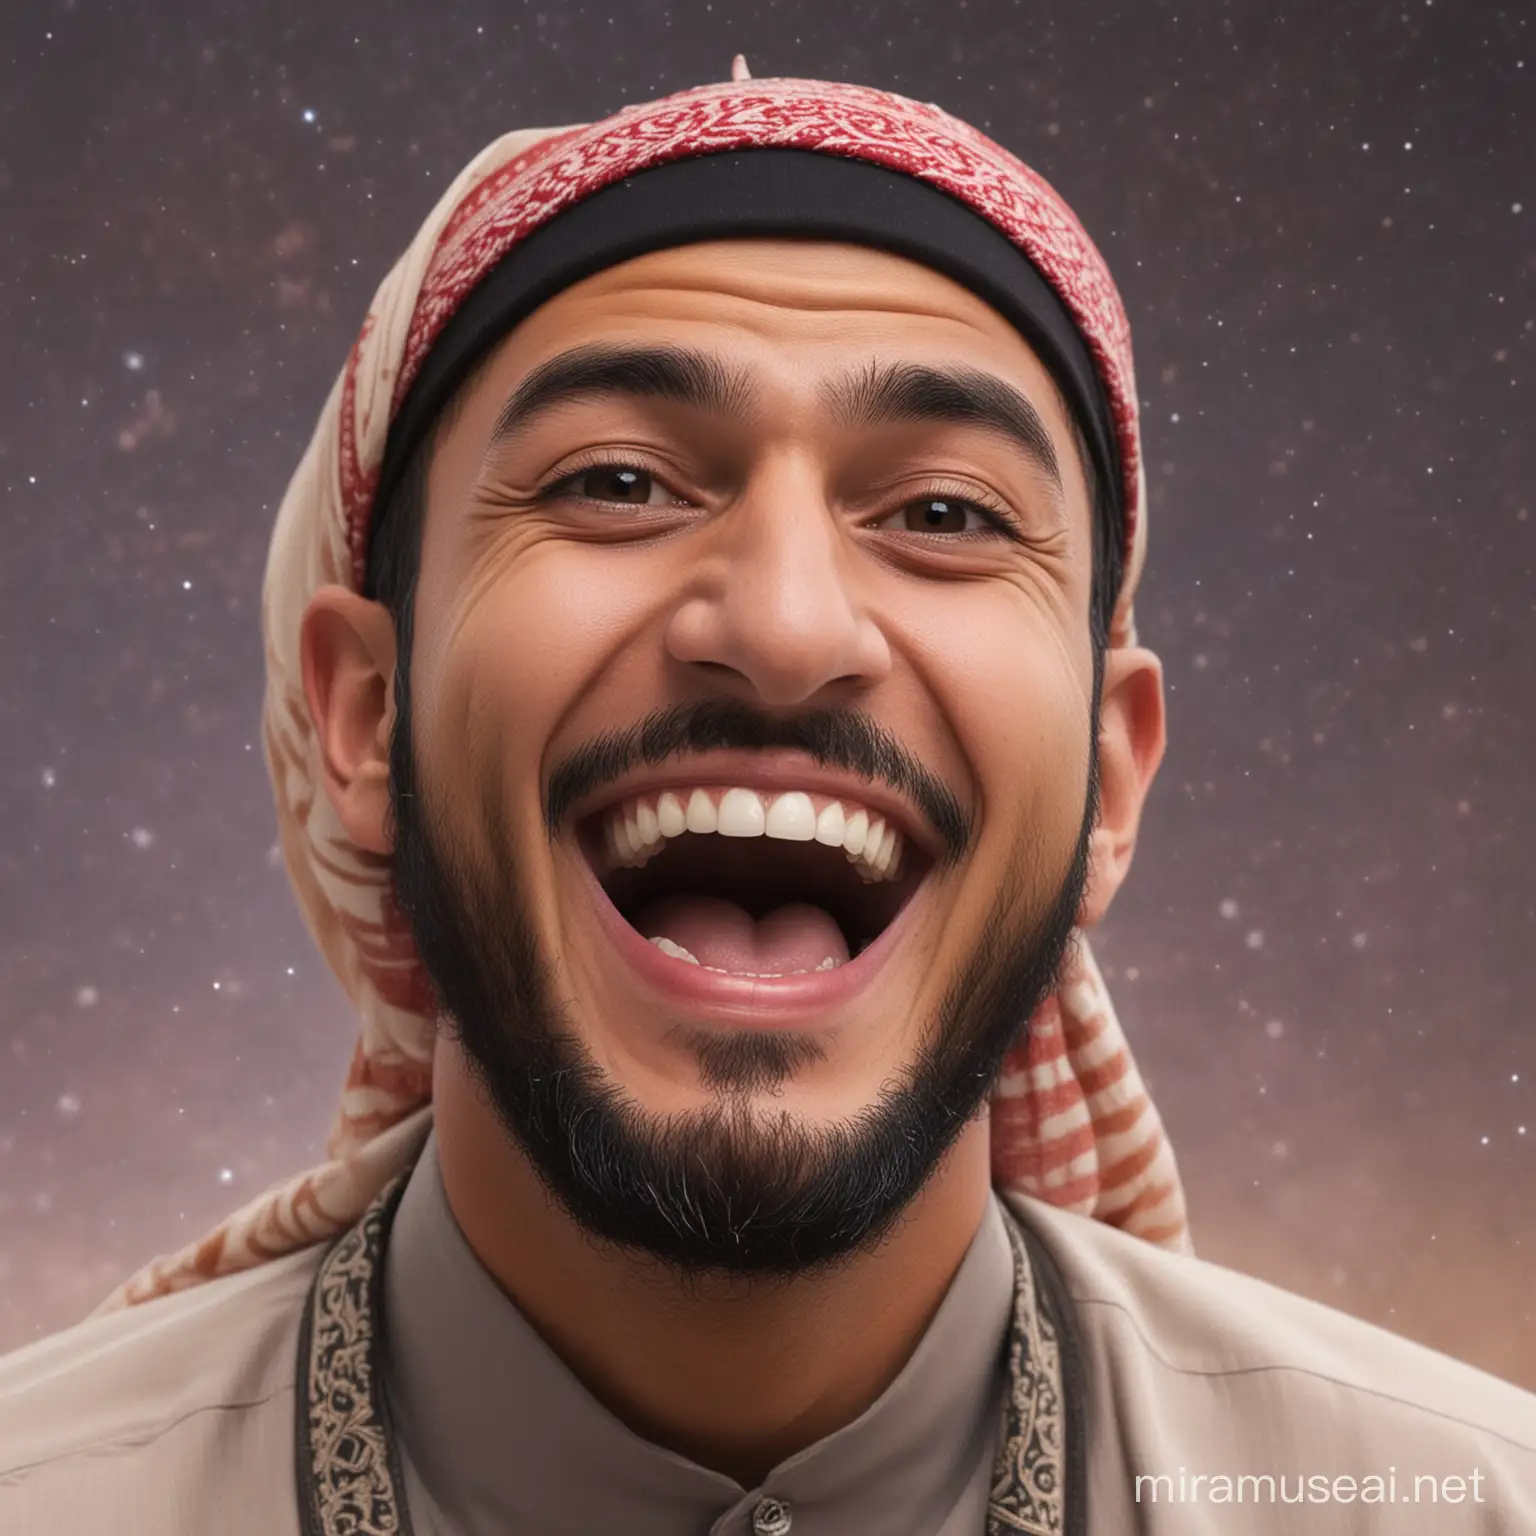 Muslim Man Laughing Hilariously in Cosmic Joy